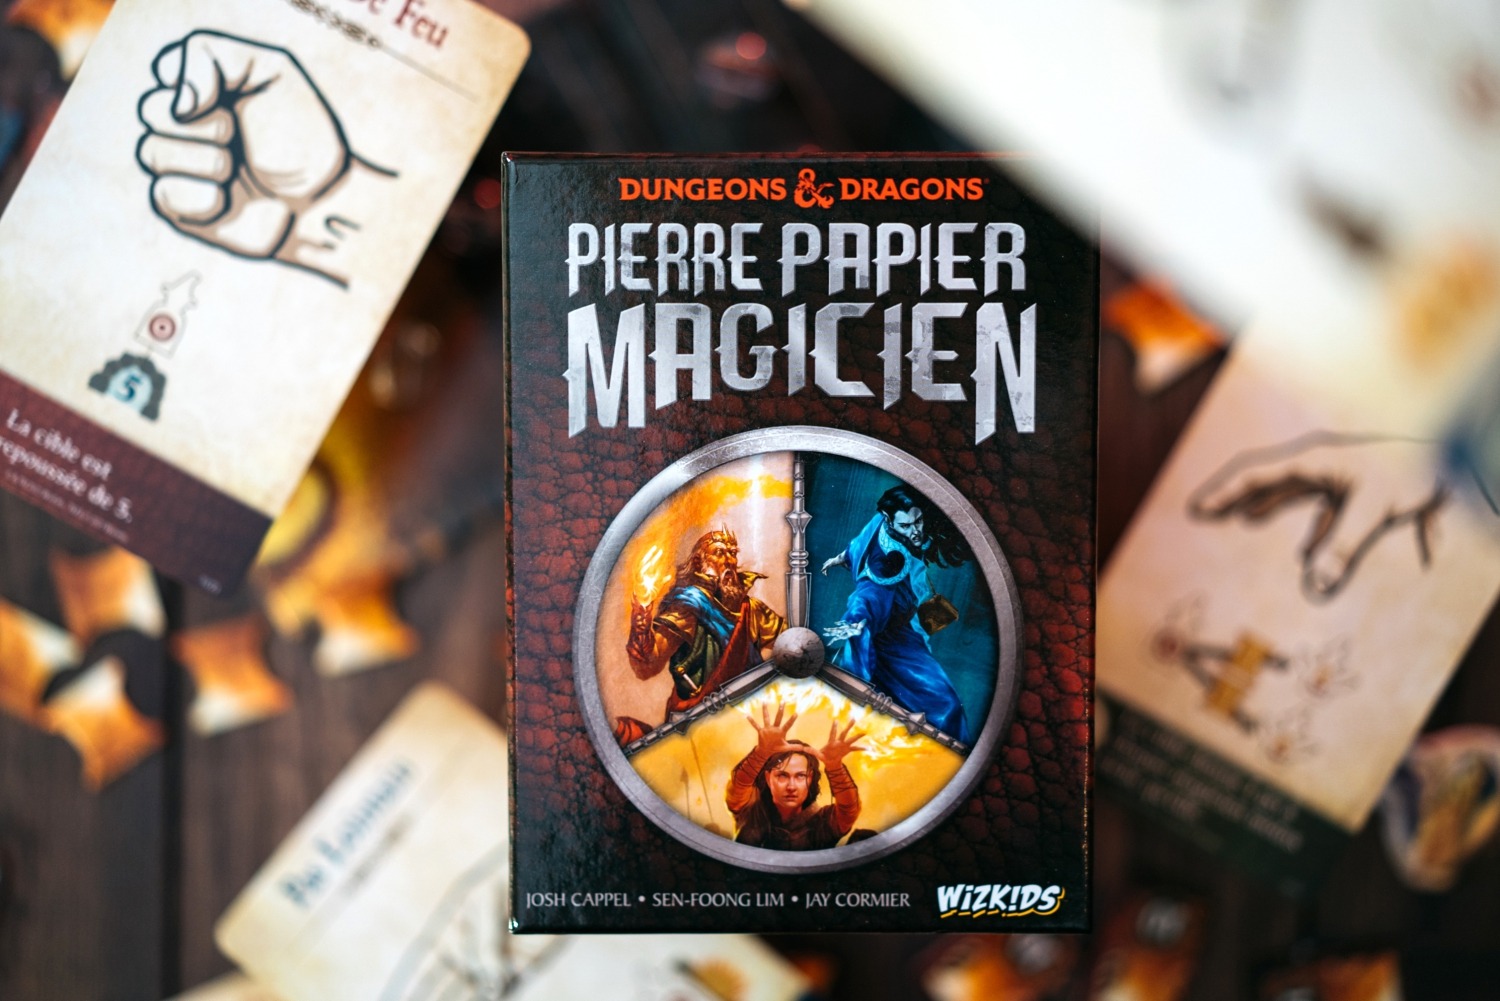 Pierre papier magicien dungeons & dragons wizikids origames jeu de société